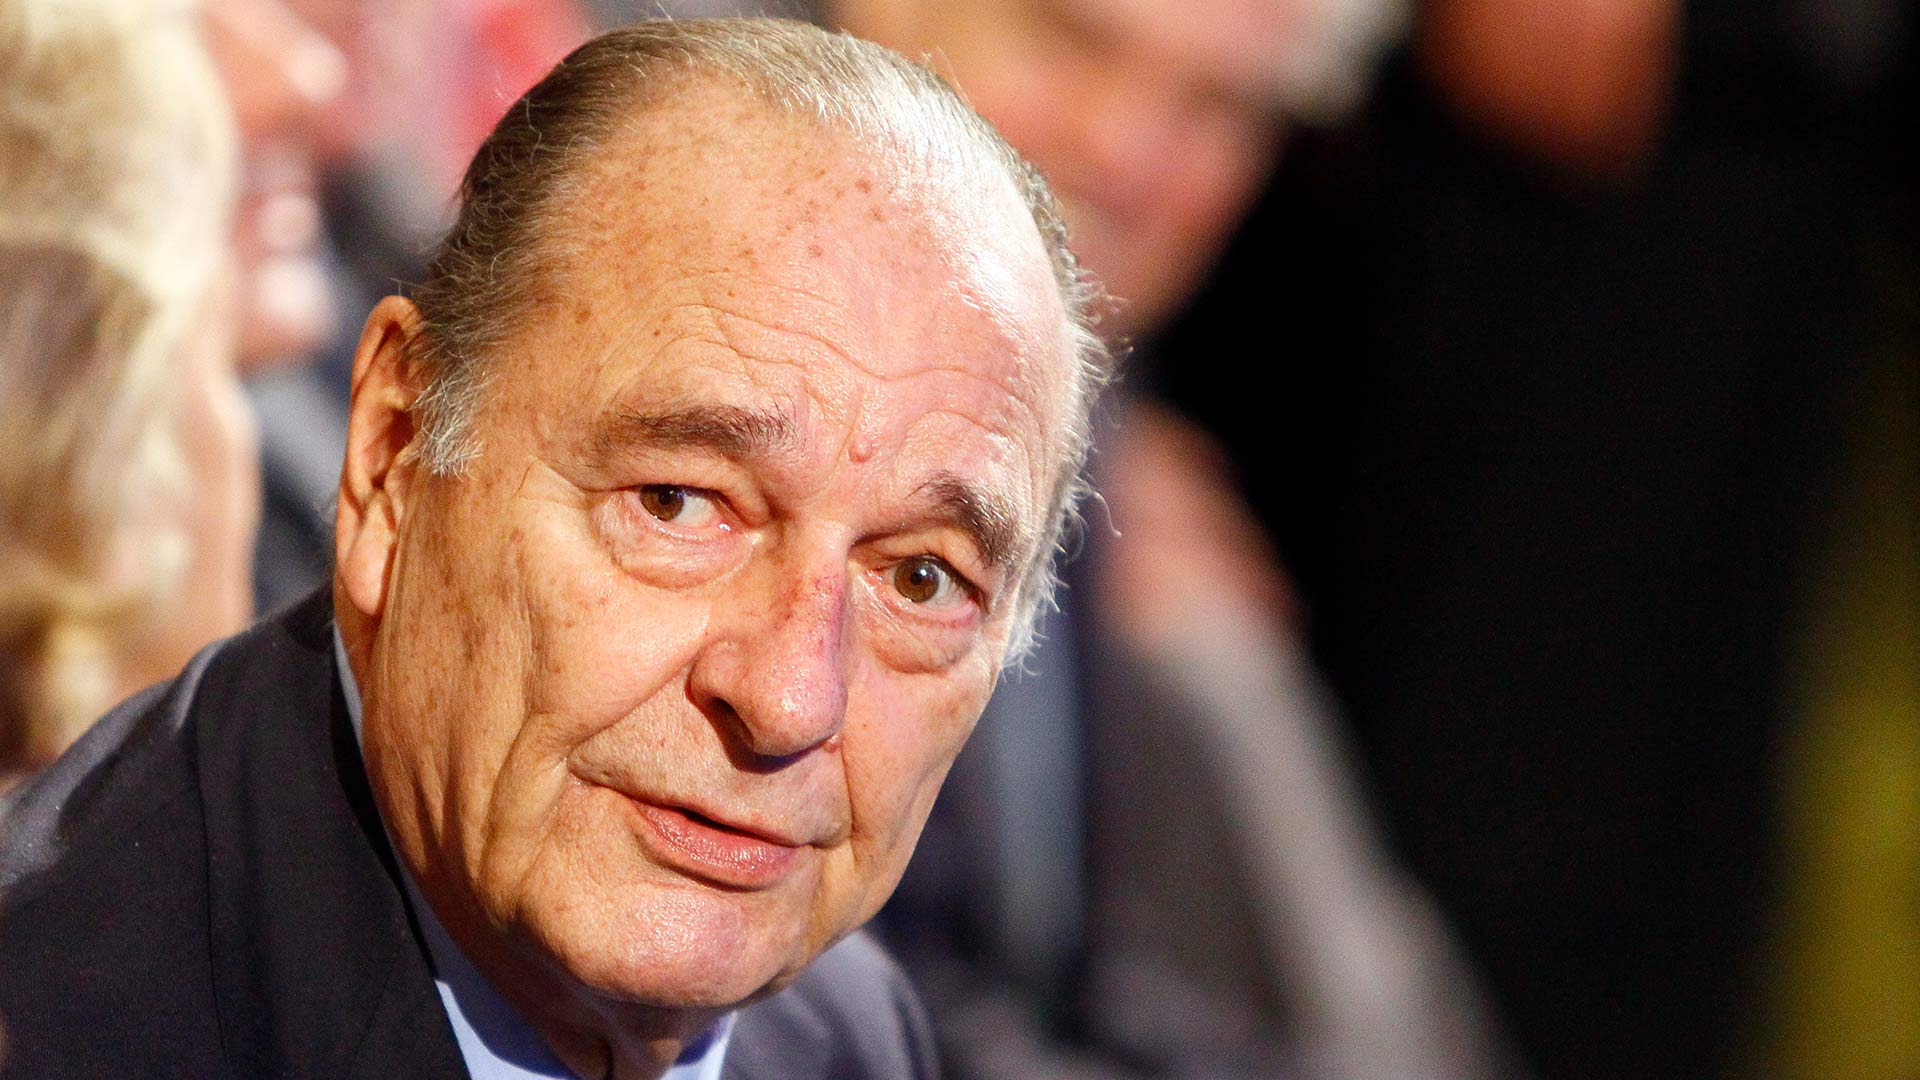 Fallece el expresidente francés Jacques Chirac a los 86 años